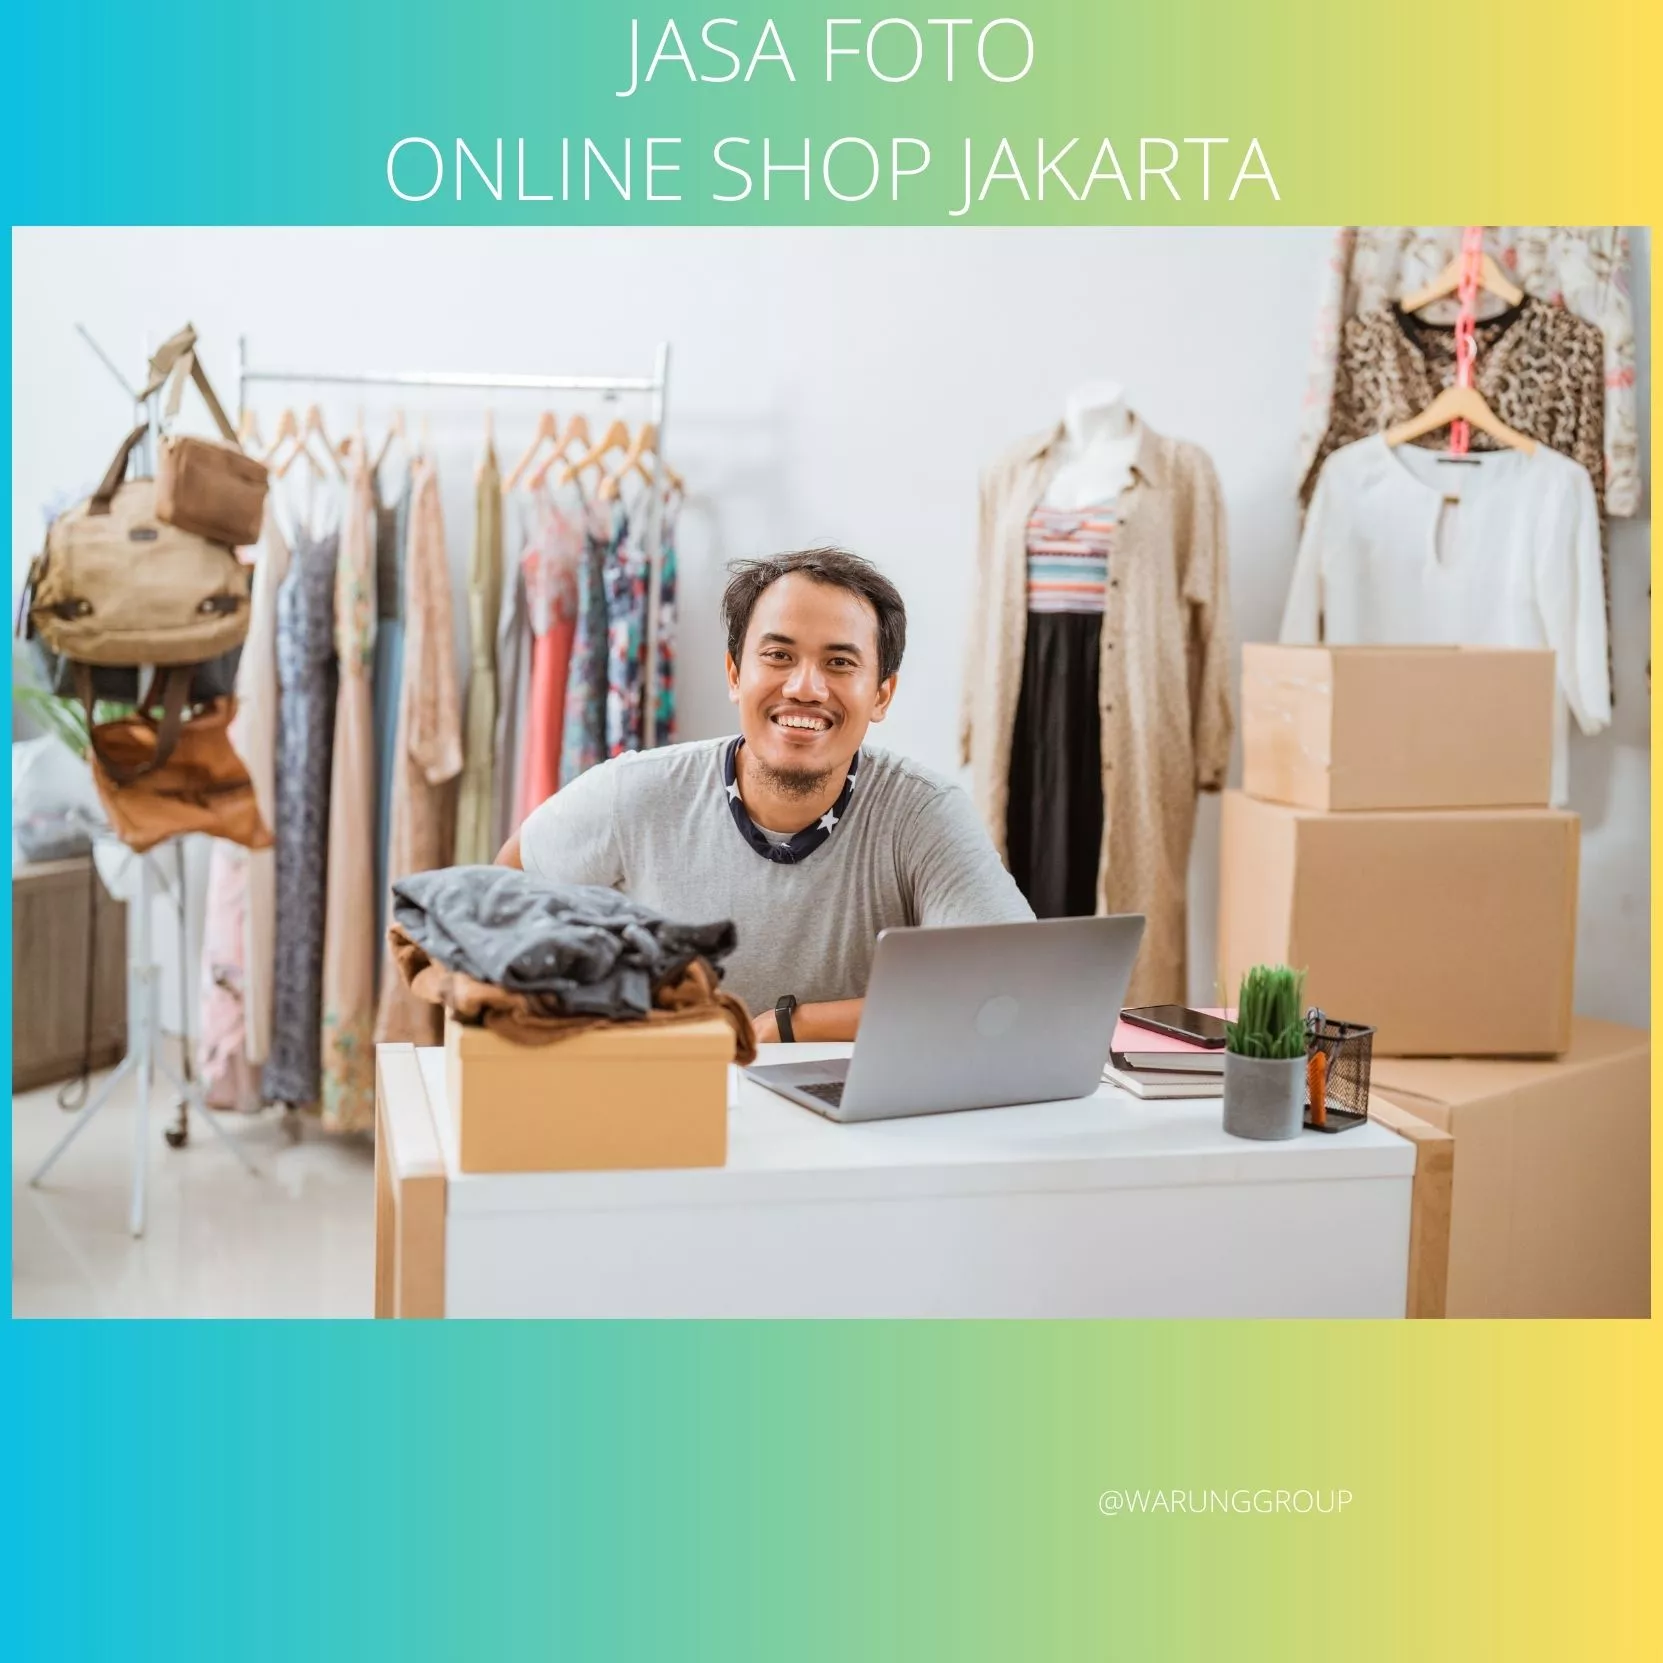 Pengertian Jasa Foto Online Shop Jakarta